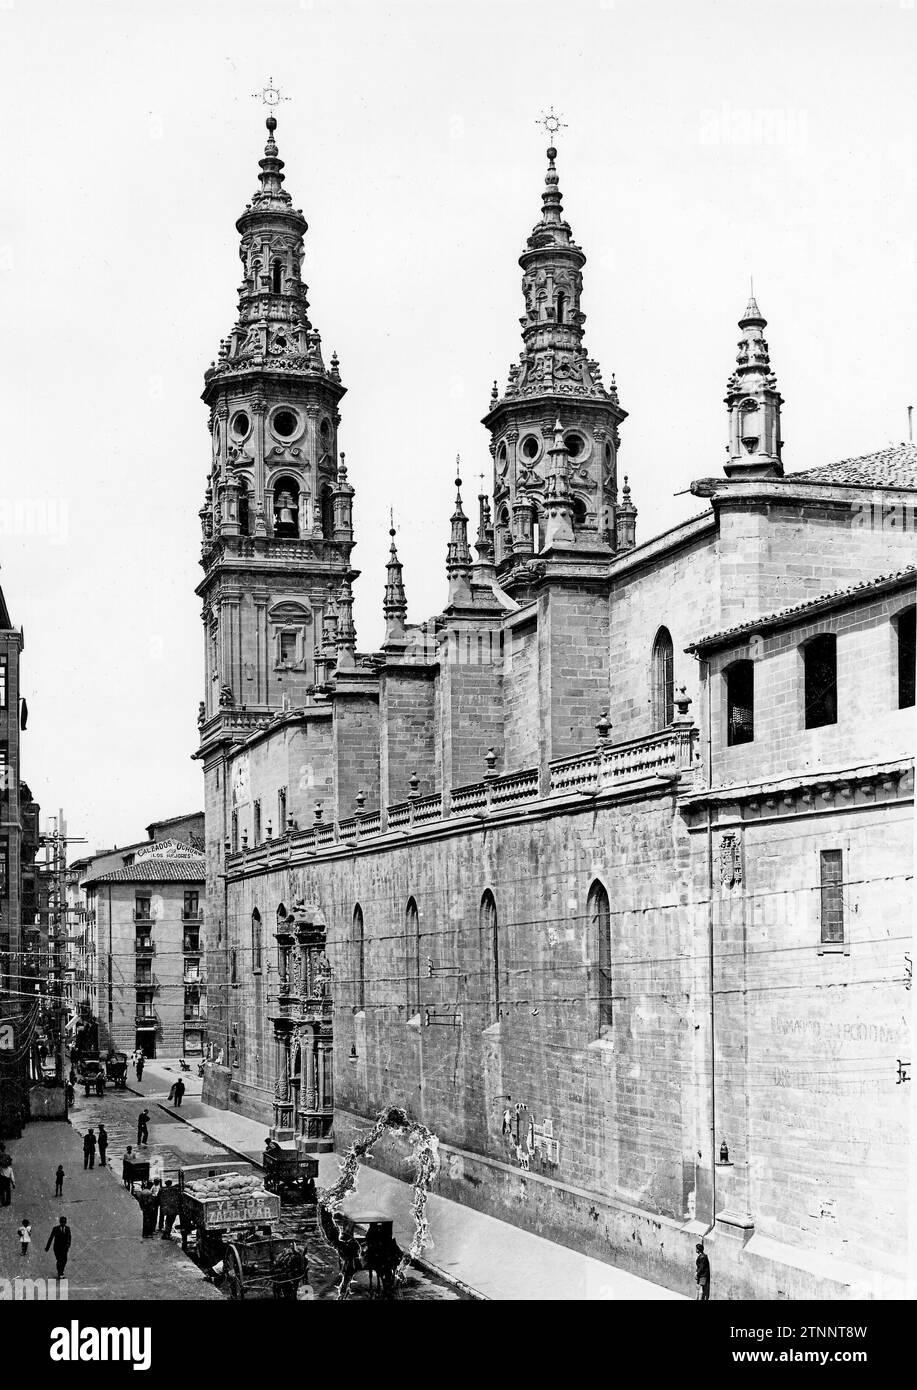 12/31/1931. CATHÉDRALE DE LA REDONDA. 'La Redonda' doit son nom à une ancienne église romane construite sur le même site que l'actuelle, de forme polygonale, et qui doit avoir occupé approximativement un espace équivalent à la moitié du temple de nos jours. Les deux tours latérales appelées «les jumeaux» sont un bon exemple de la monumentalité des clochers baroques de Riojan. Ils ont plusieurs corps superposés : les inférieurs sont de section carrée, le supérieur est octogonal et une flèche remplie de pinacles comme touche finale. Trois périodes composent 'Santa Masía de la Redonda' : Construction, 15e centime Banque D'Images